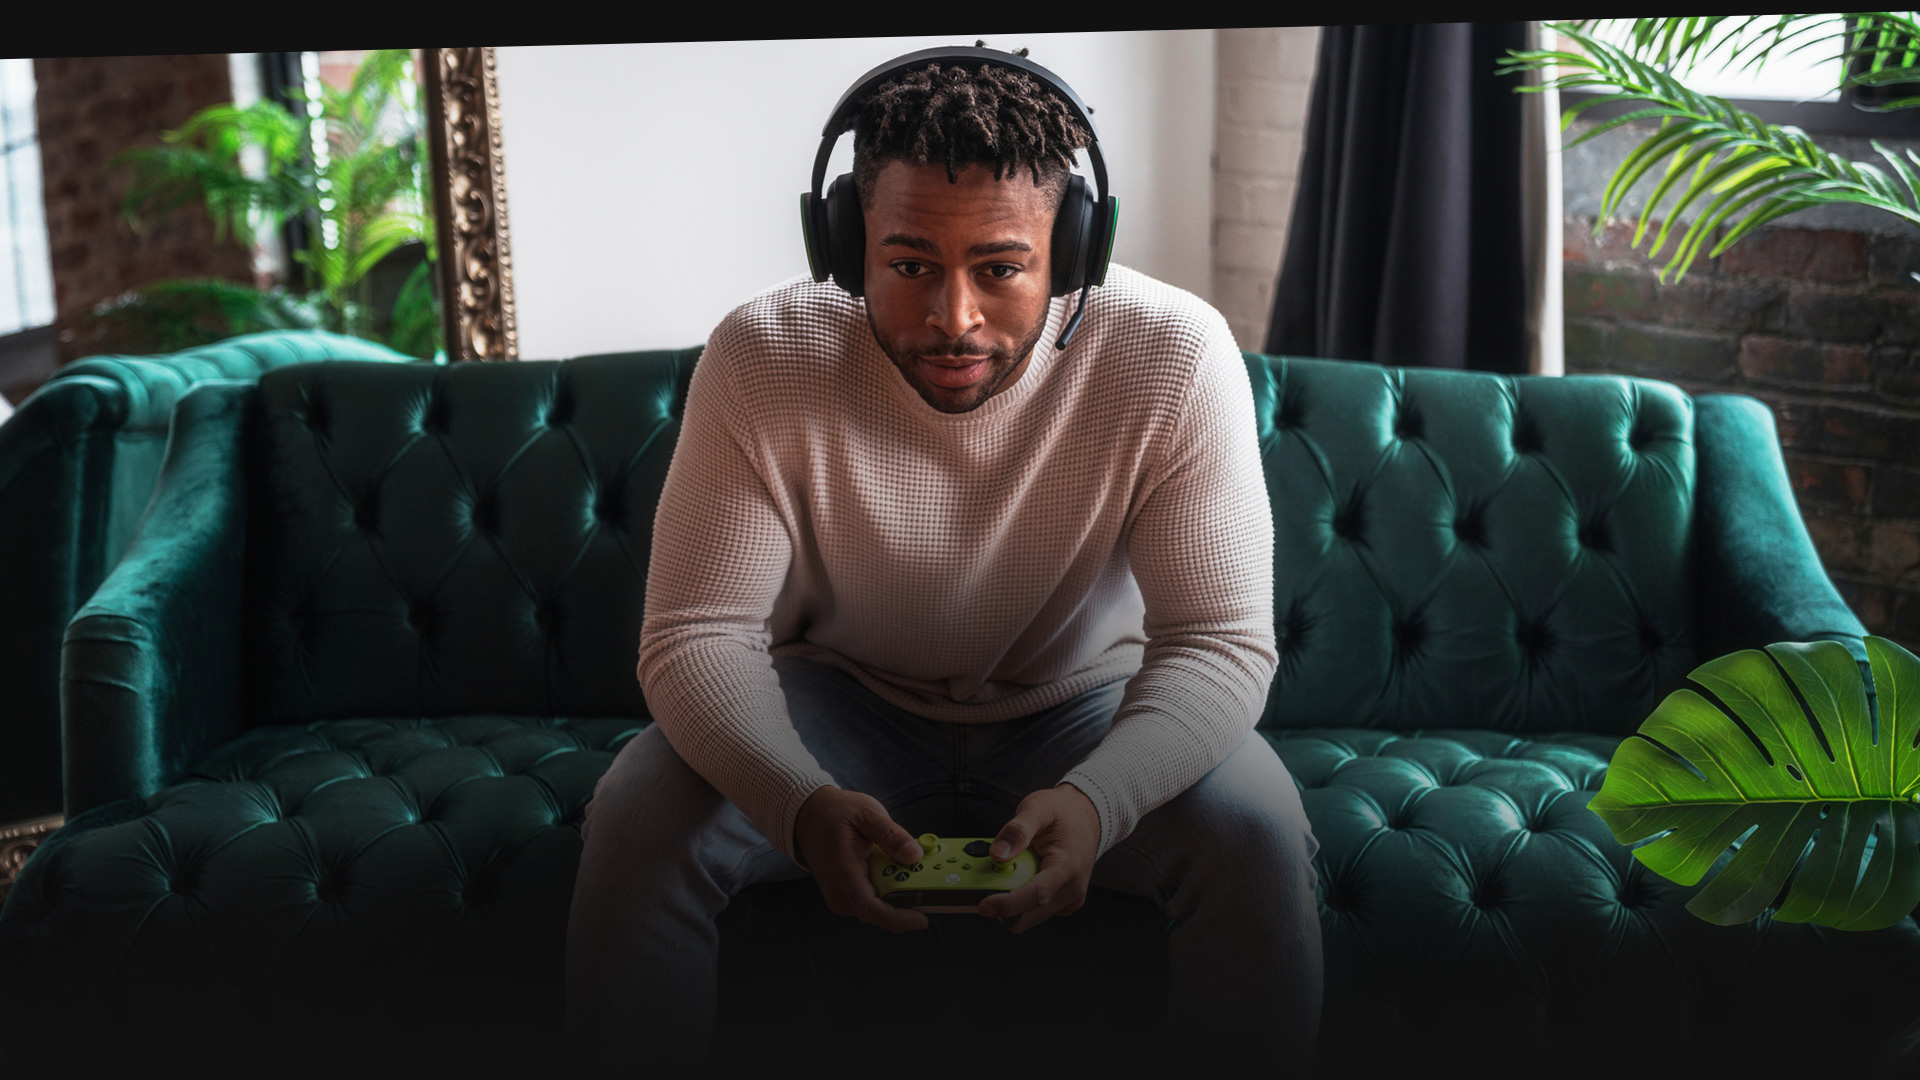 Una persona con audífonos jugando a Xbox en un sillón